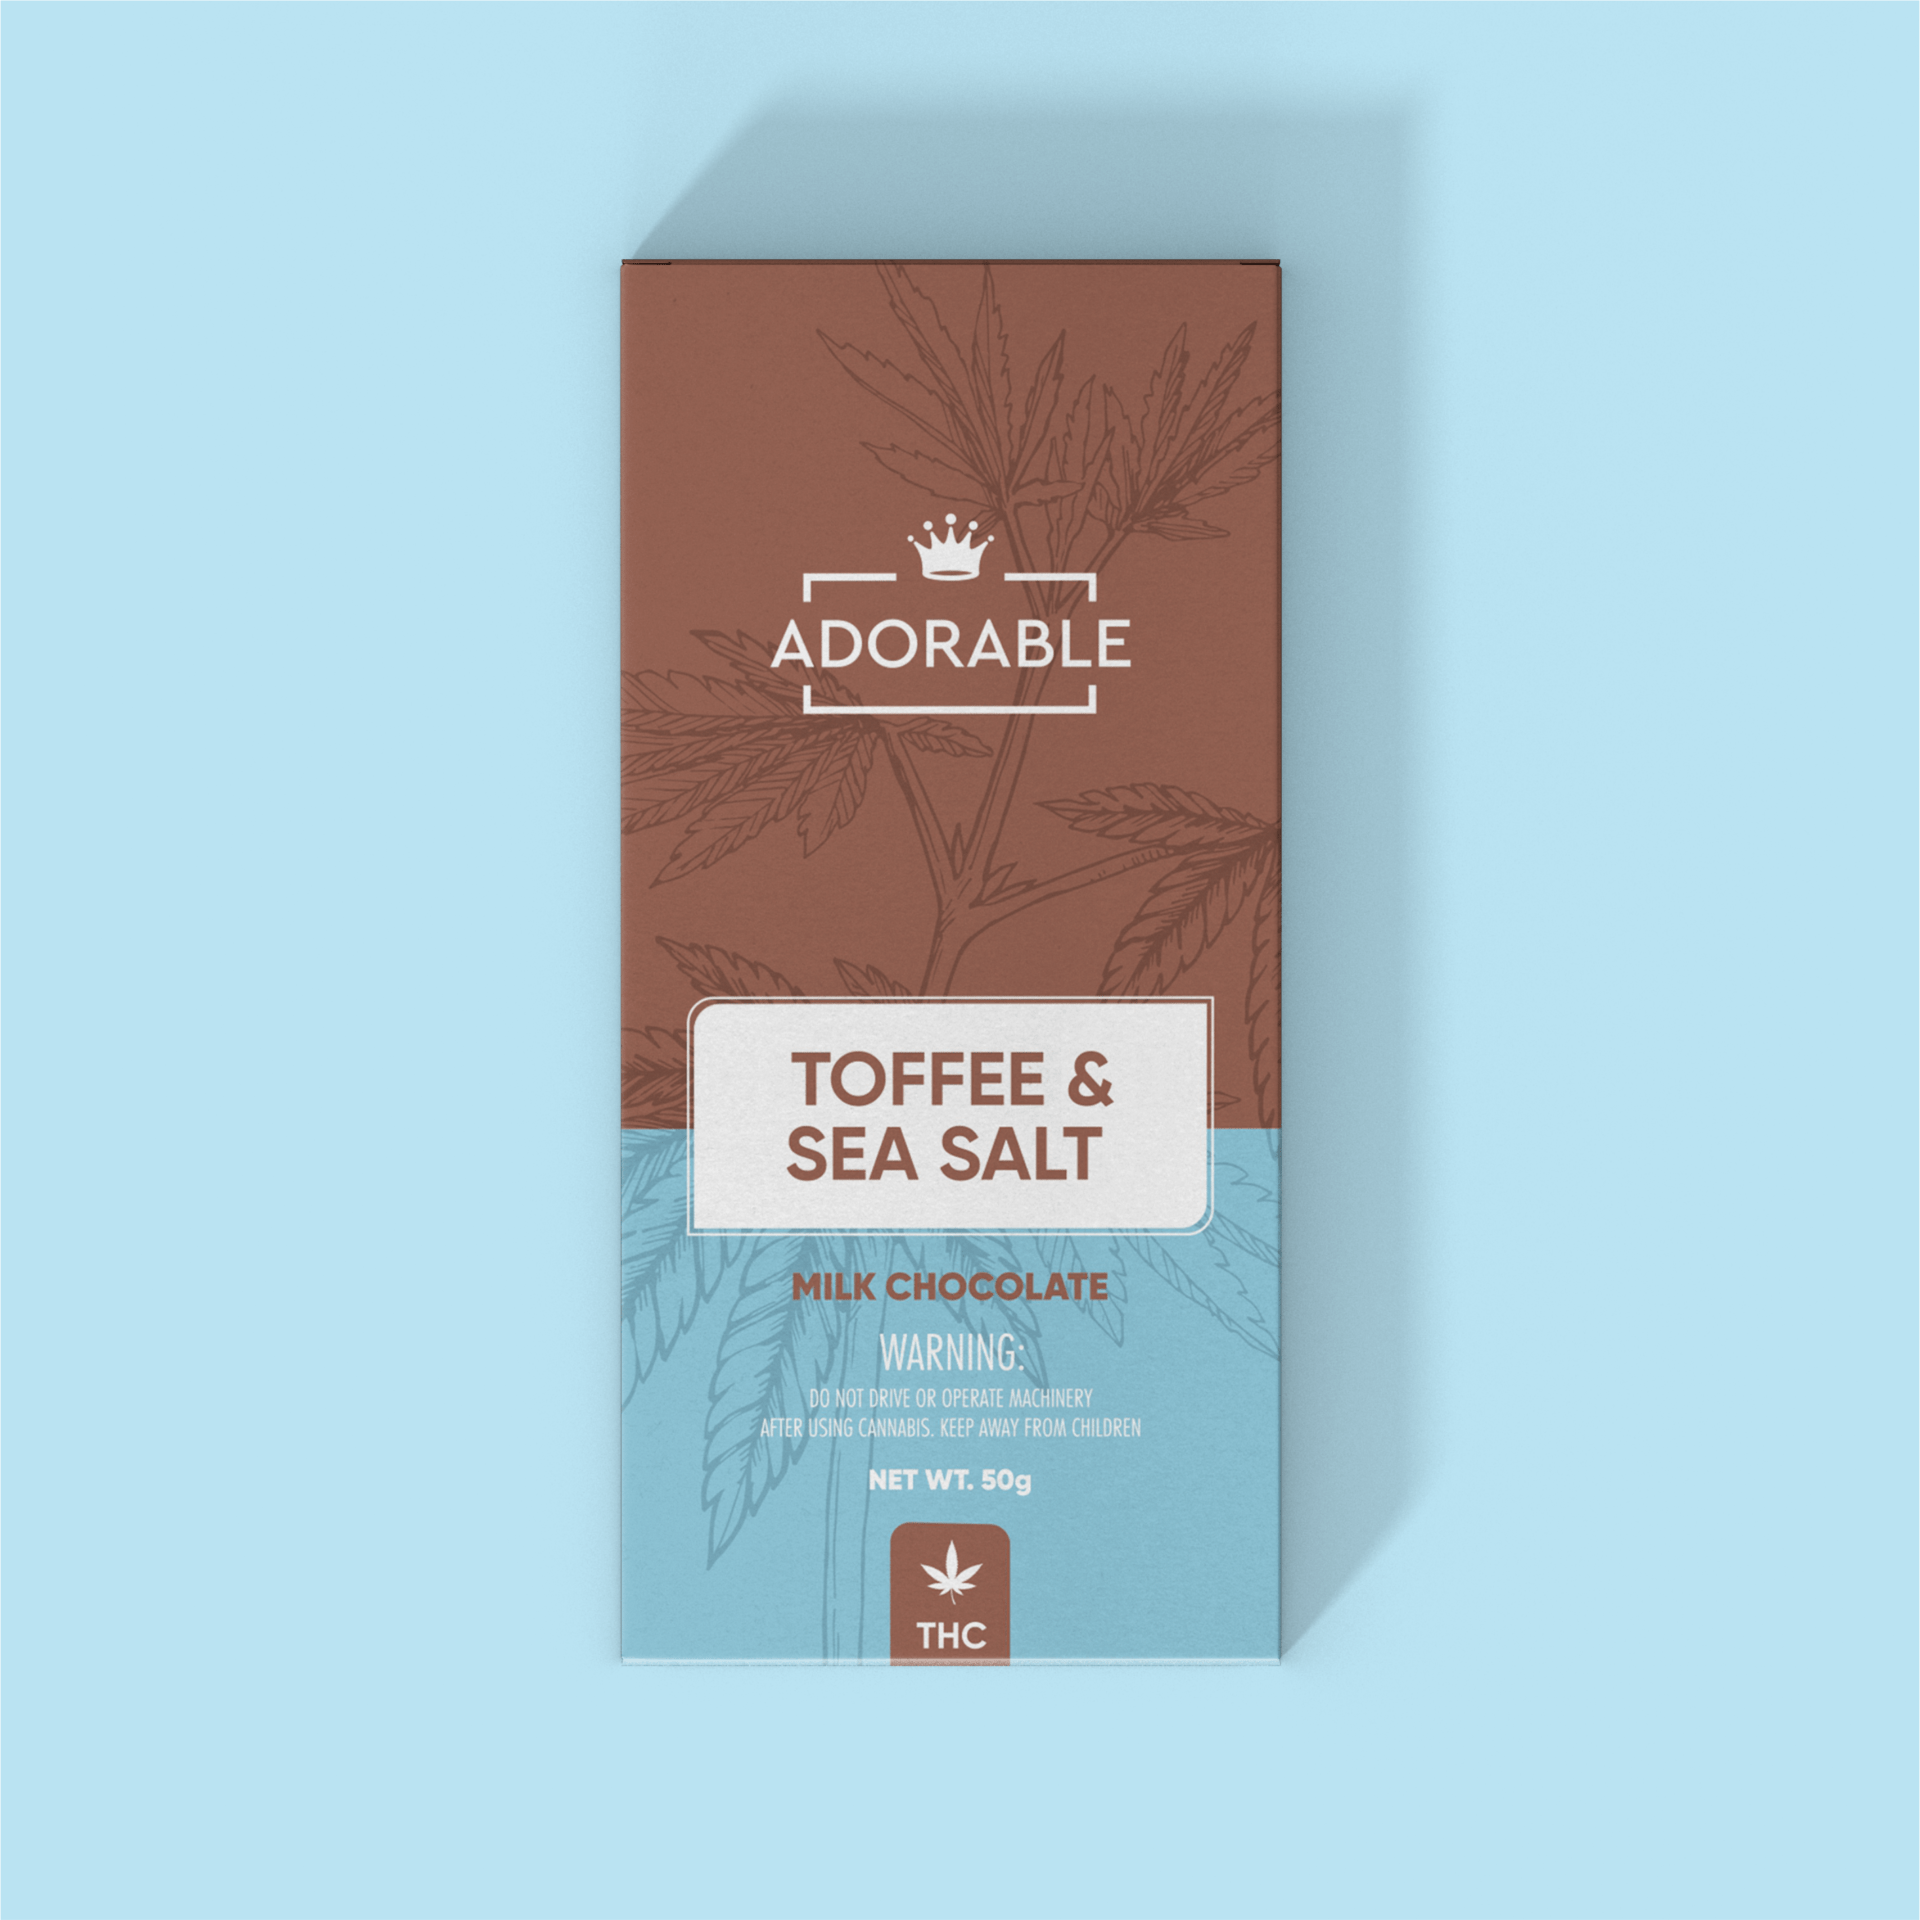 Adorable - Toffee & Sea Salt - Milk Chocolate